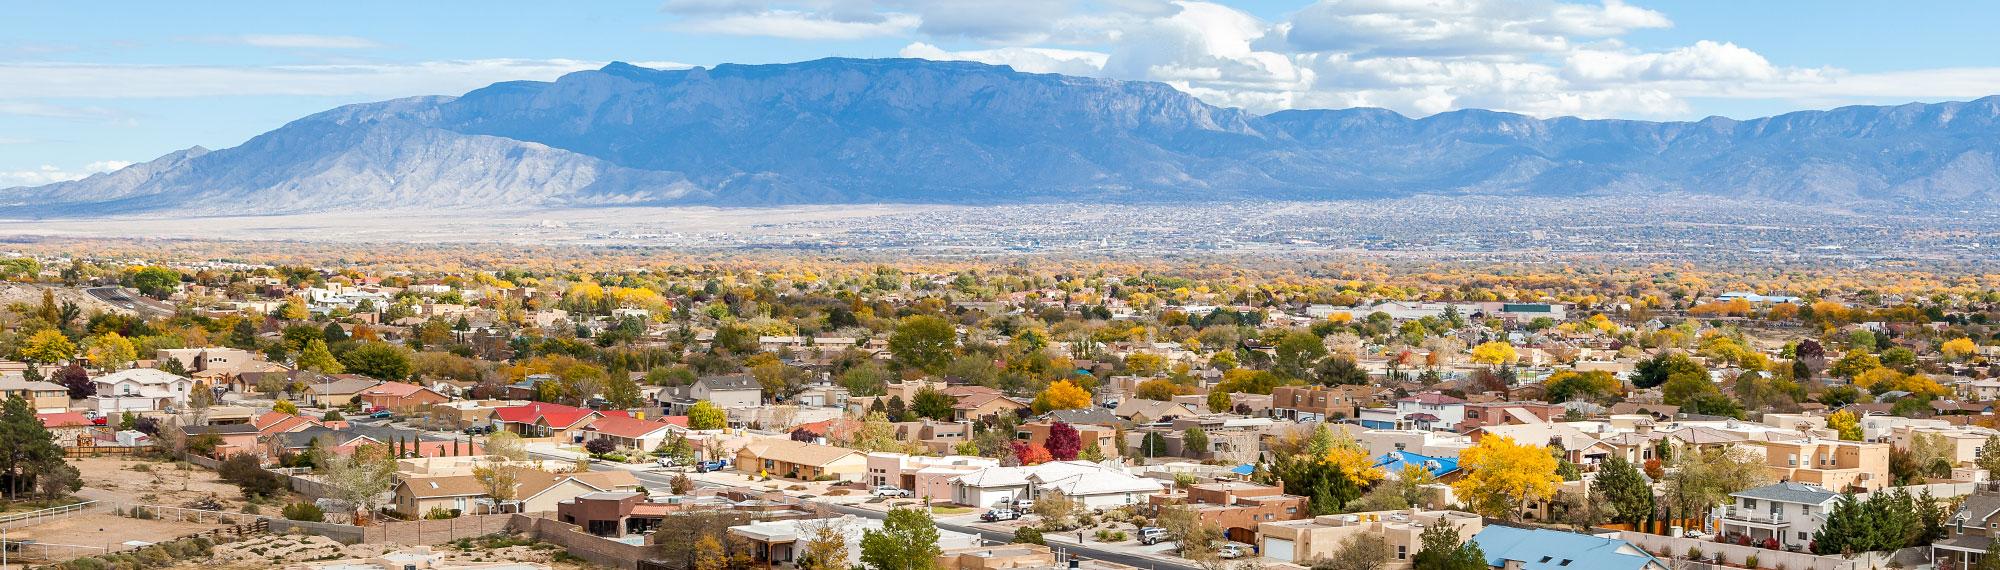 residential area of Albuquerque NM